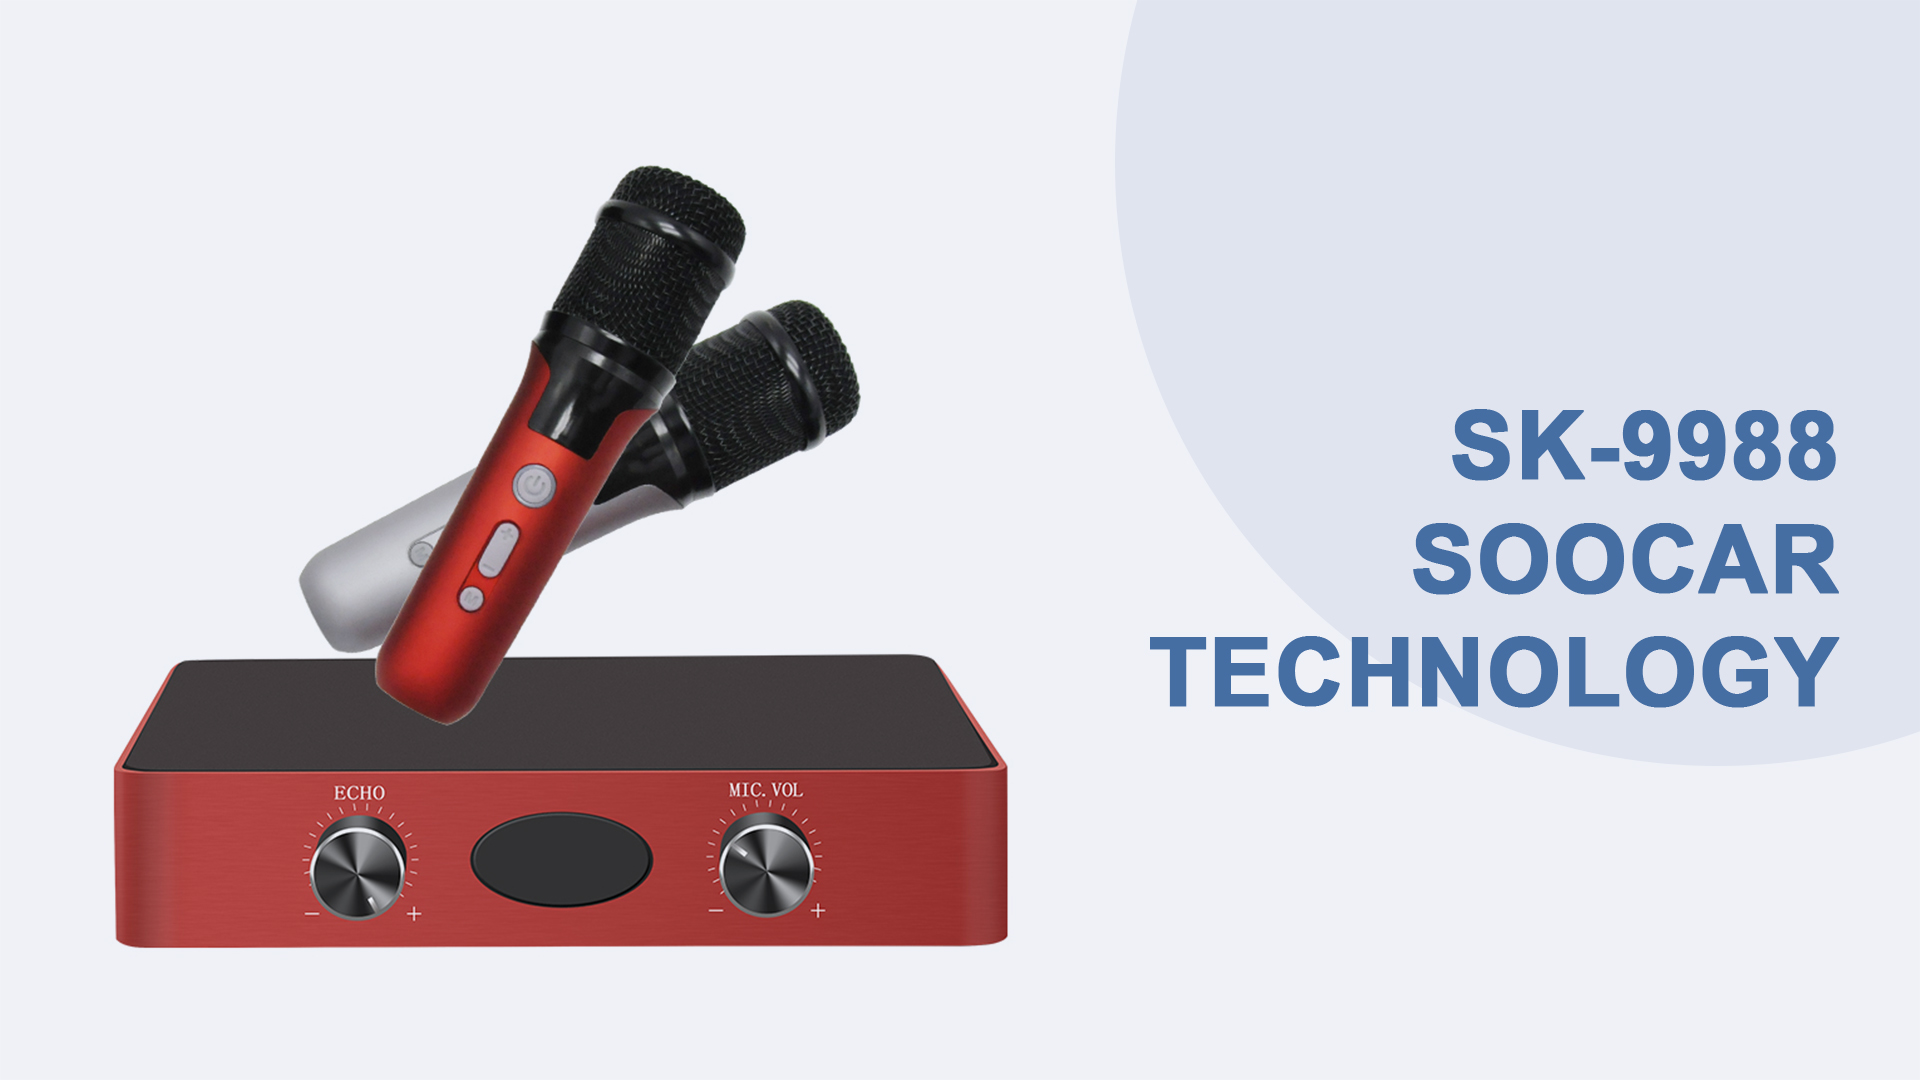 Caja de sistema de karaoke portátil con tecnología Soocar hecha de aleación de aluminio sk-9988